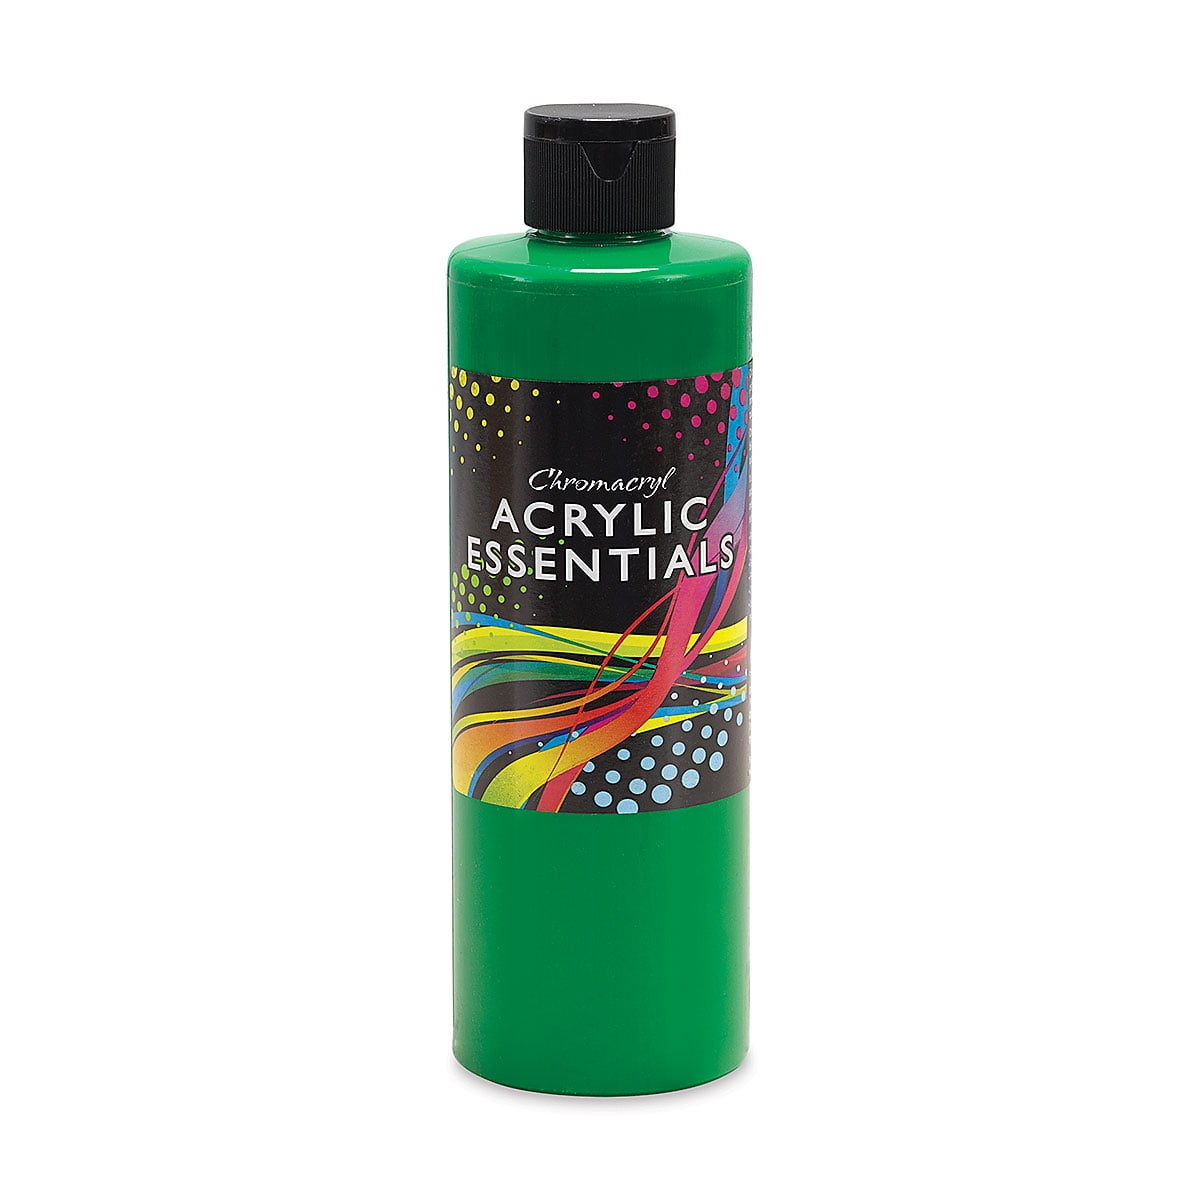 Testors Acrylic Enamel Paint Set with Paintbrushes –- Asst Colors